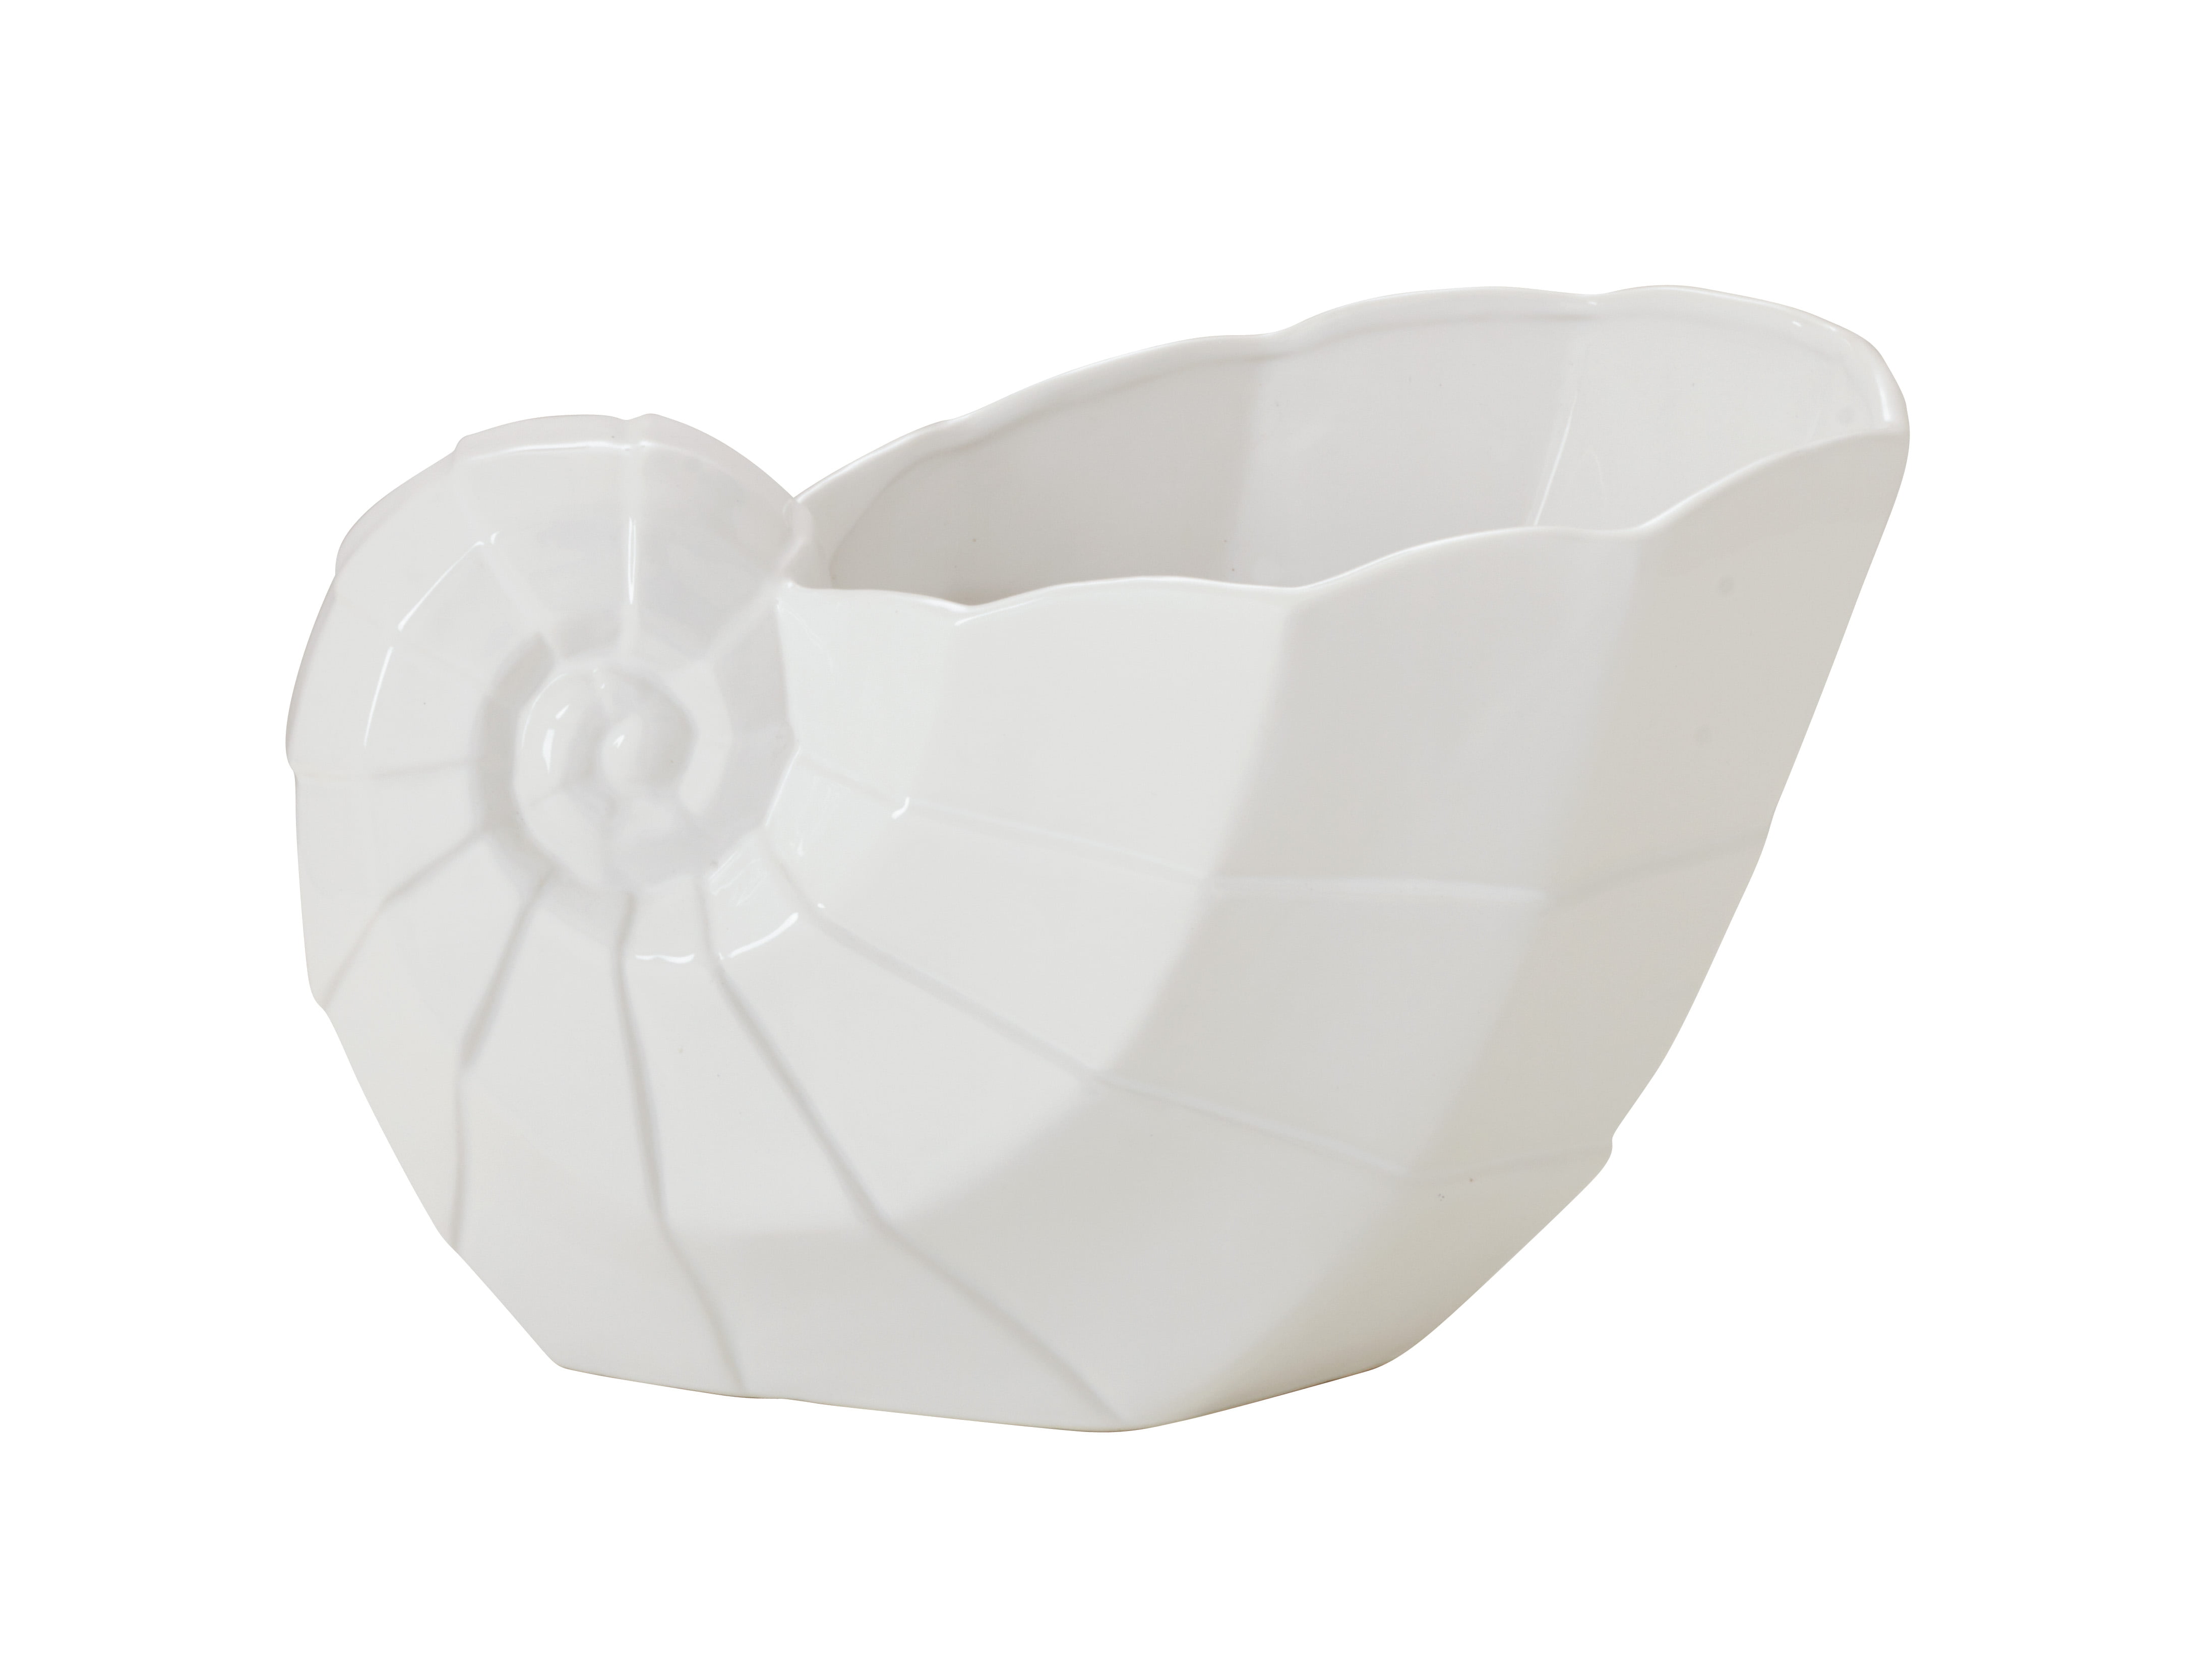 Ceramic Sea shell Decor - Walmart.com